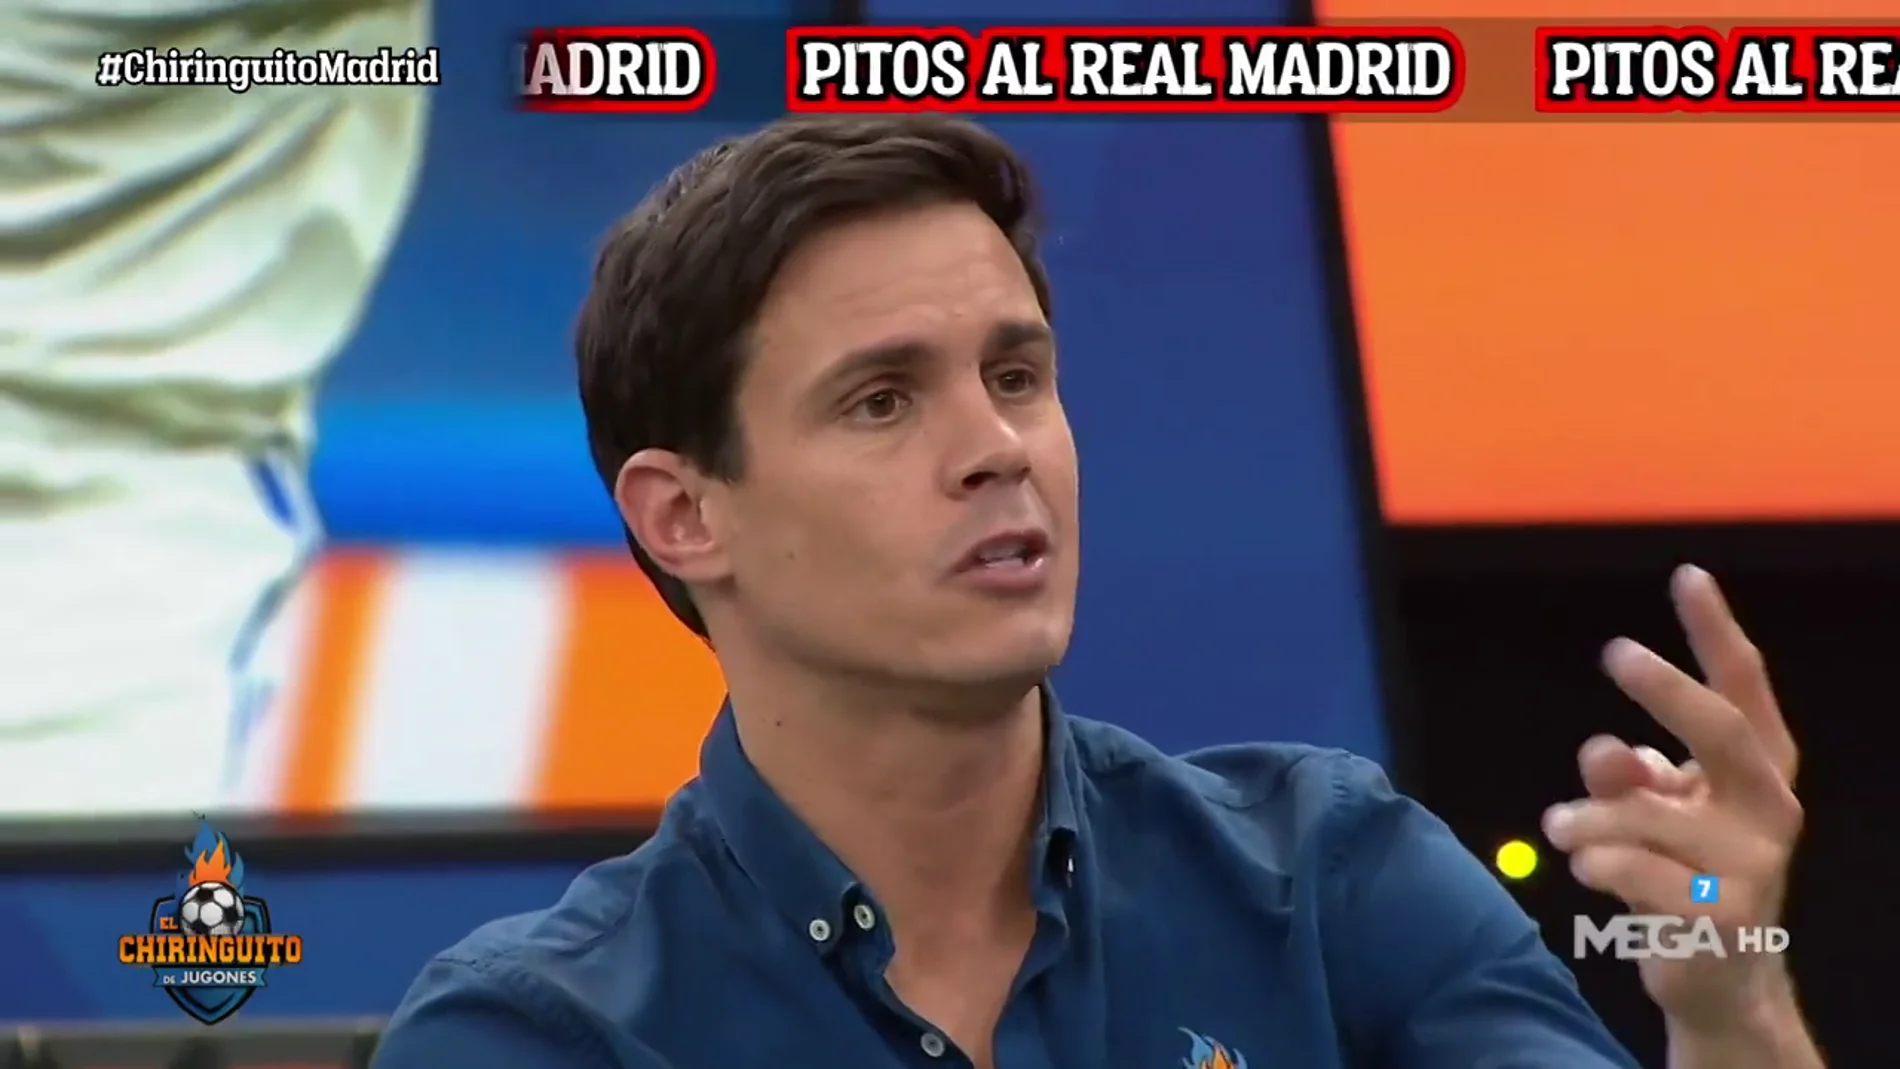 "El Real Madrid se ha relajado y han ido andando"